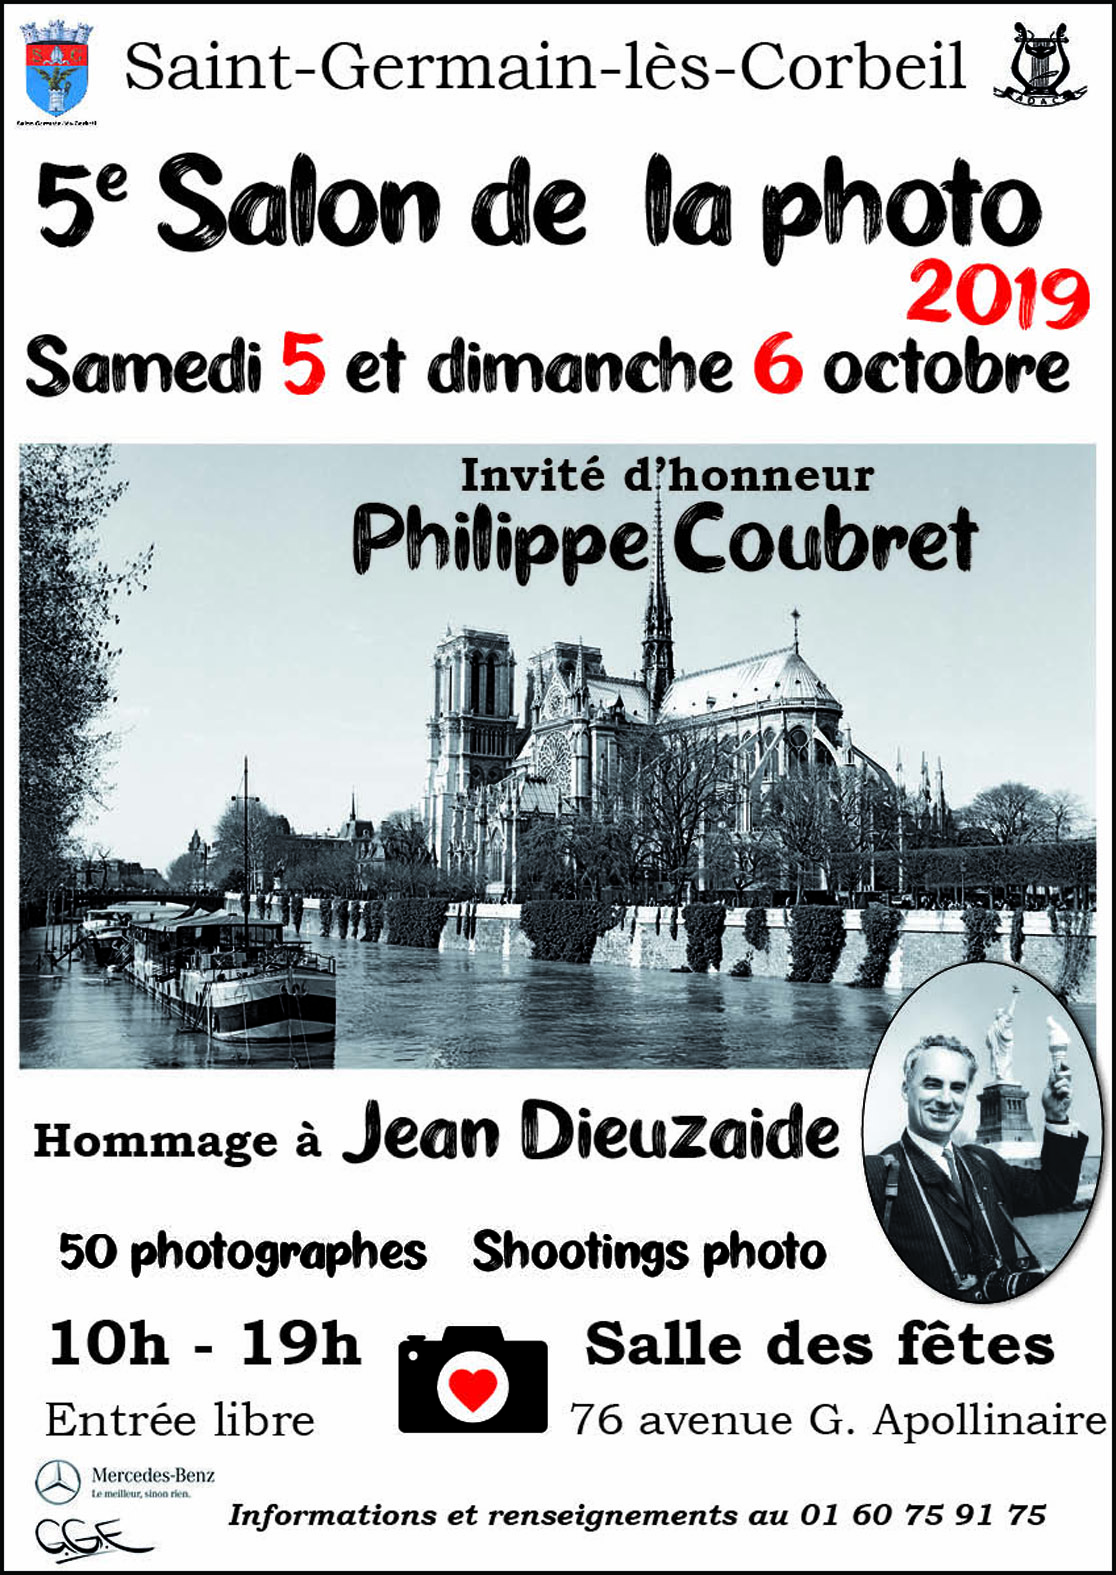 Photos de Robert Desgroppes exposées au 5ème Salon Photo de Saint- Germain-lès-Corbeil (vernissage le samedi 5 octobre 19 à 12h00